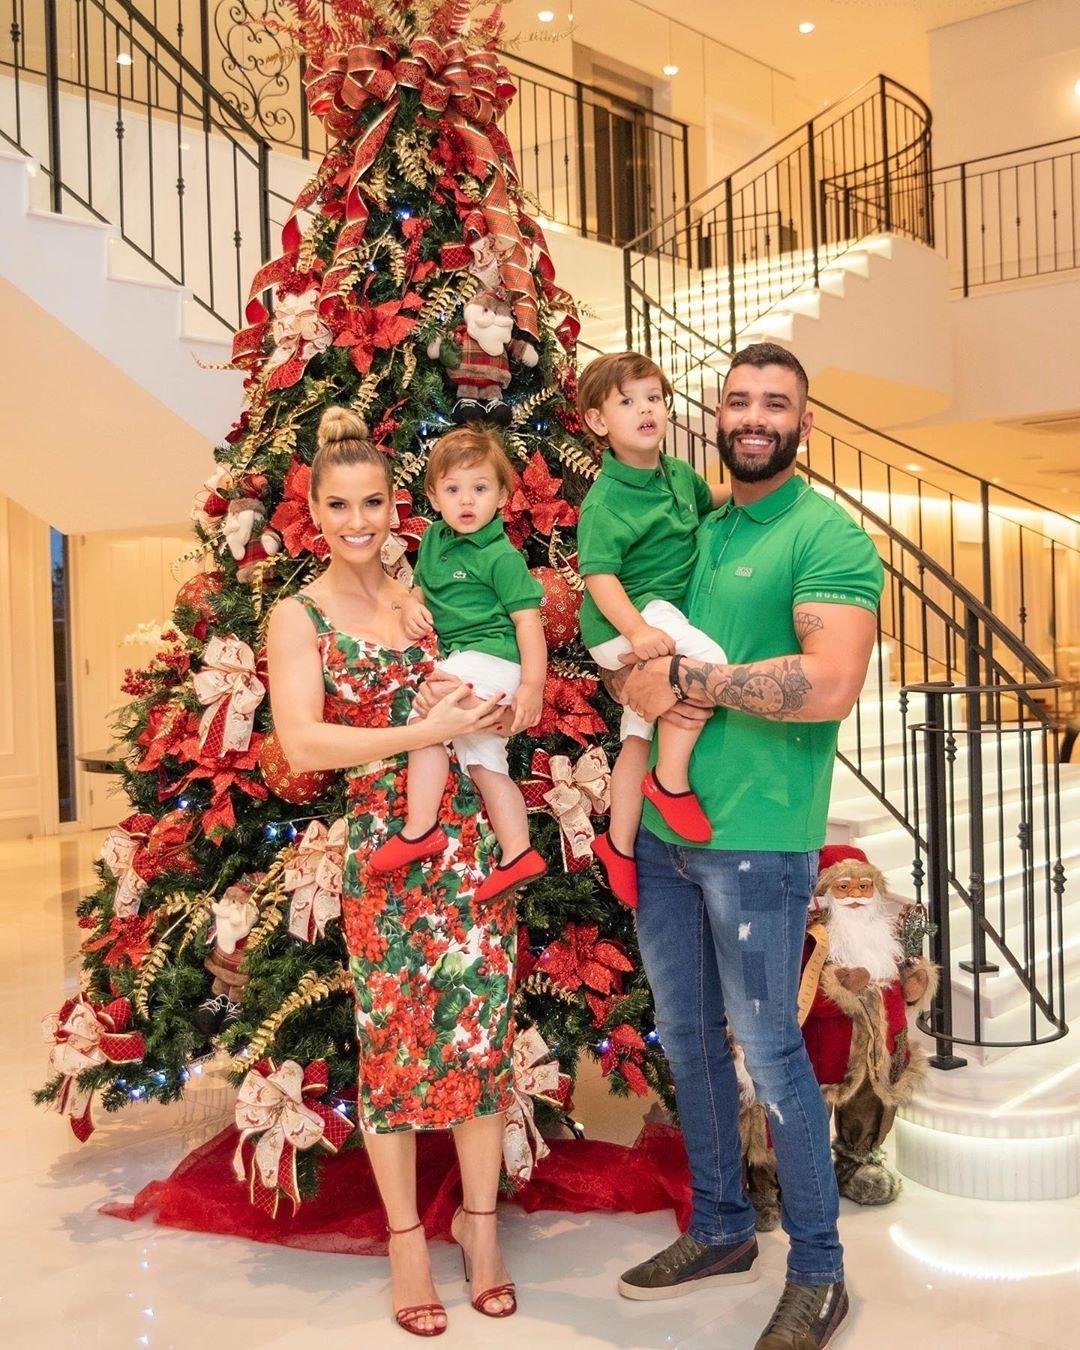 Gusttavo Lima combina roupa com filhos em foto com árvore de Natal gigante  - 25/12/2019 - UOL TV e Famosos